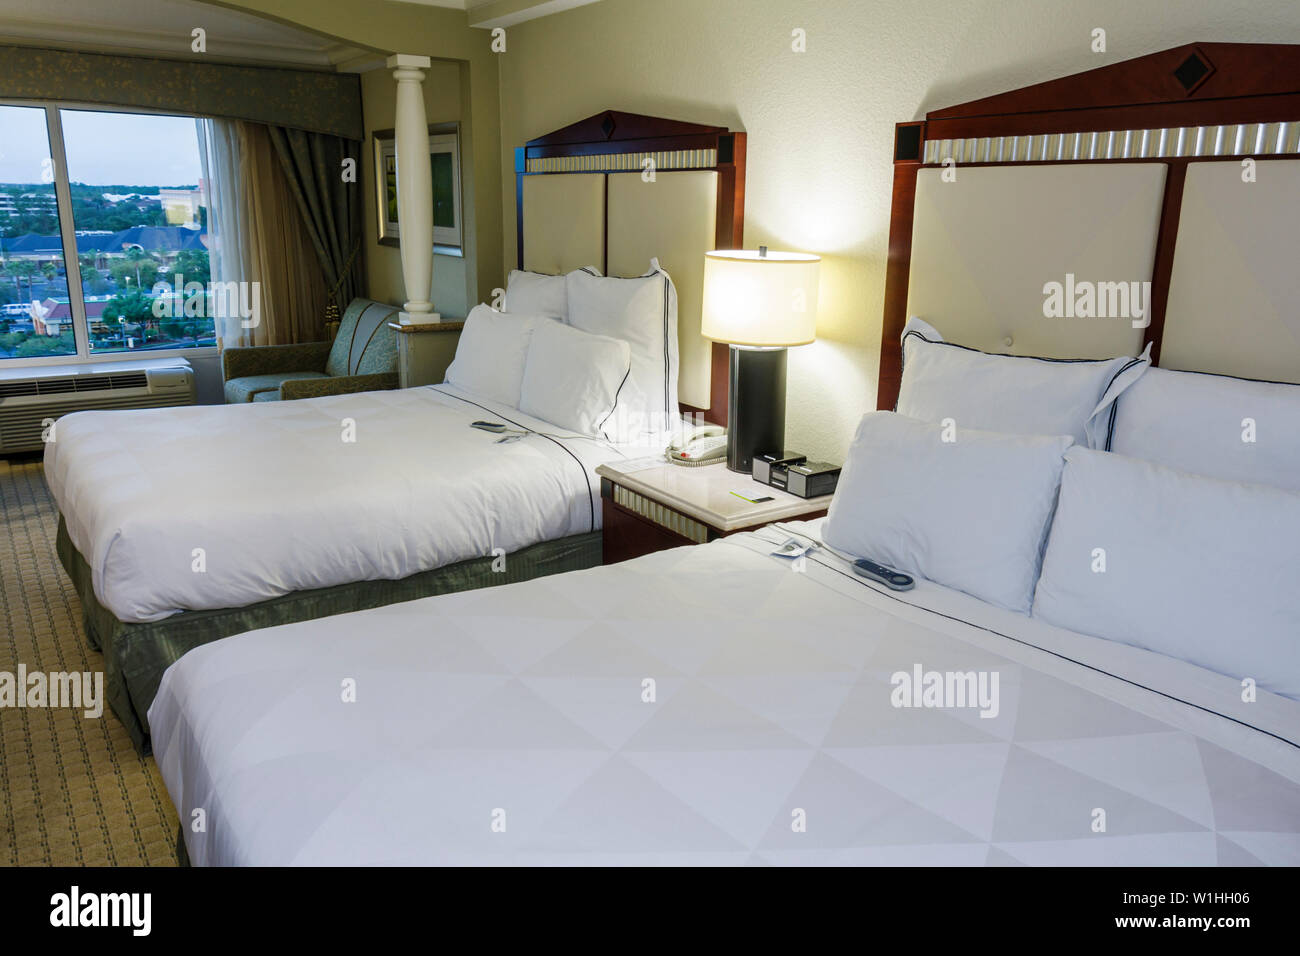 Orlando Florida,Buena Vista,Radisson,hoteles hotel alojamiento inn  moteles,cadena,alojamiento,alojamiento,habitación,cama,ropa de  cama,confort,dormir,mesita de noche Fotografía de stock - Alamy